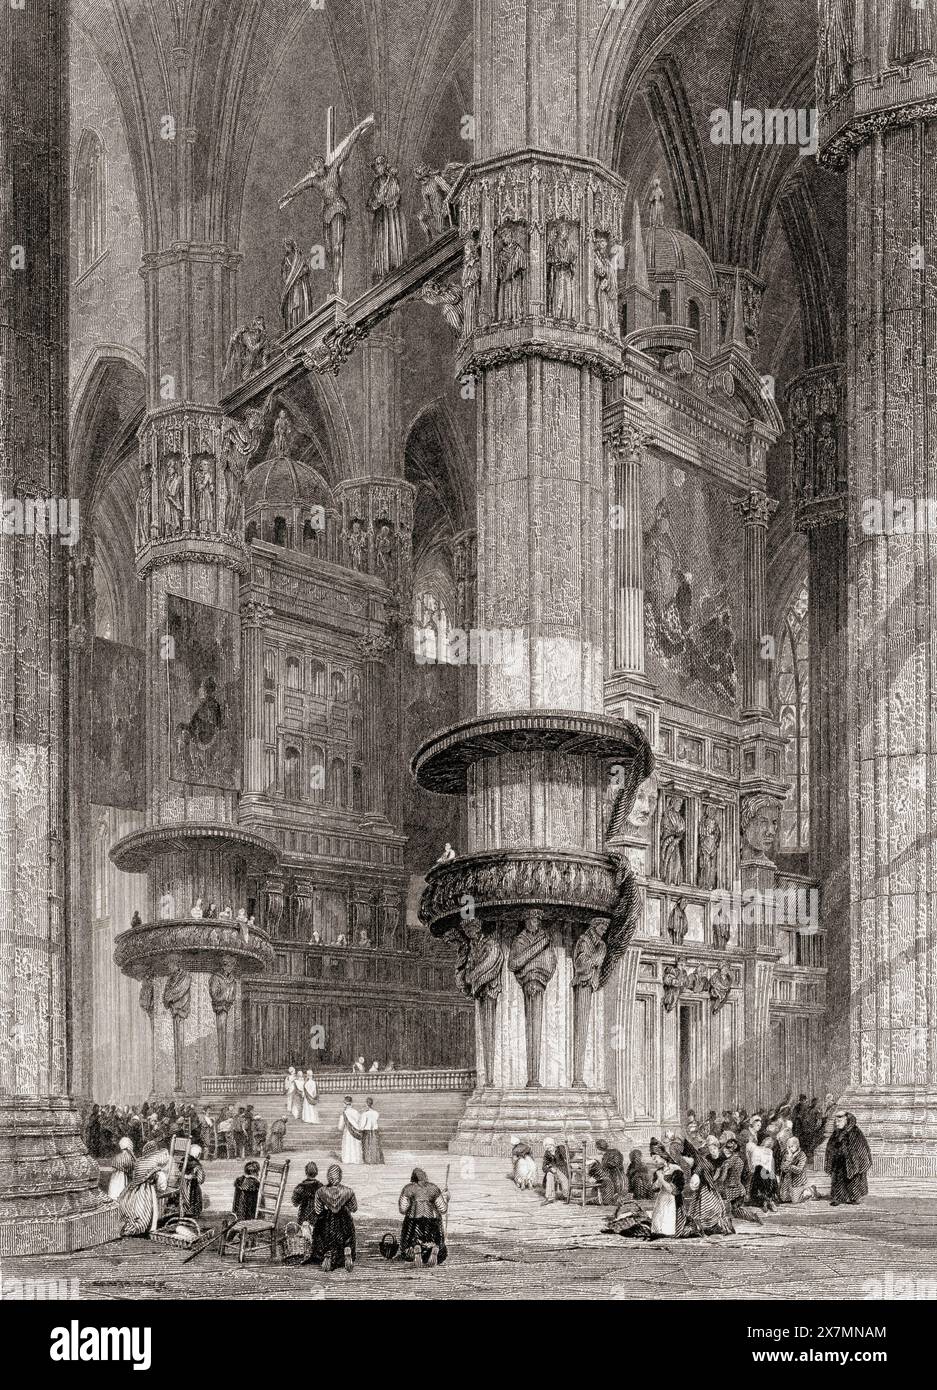 Intérieur de la cathédrale de Milan, Milan, Italie. D'après une estampe du XIXe siècle de J.D. Harding. Banque D'Images